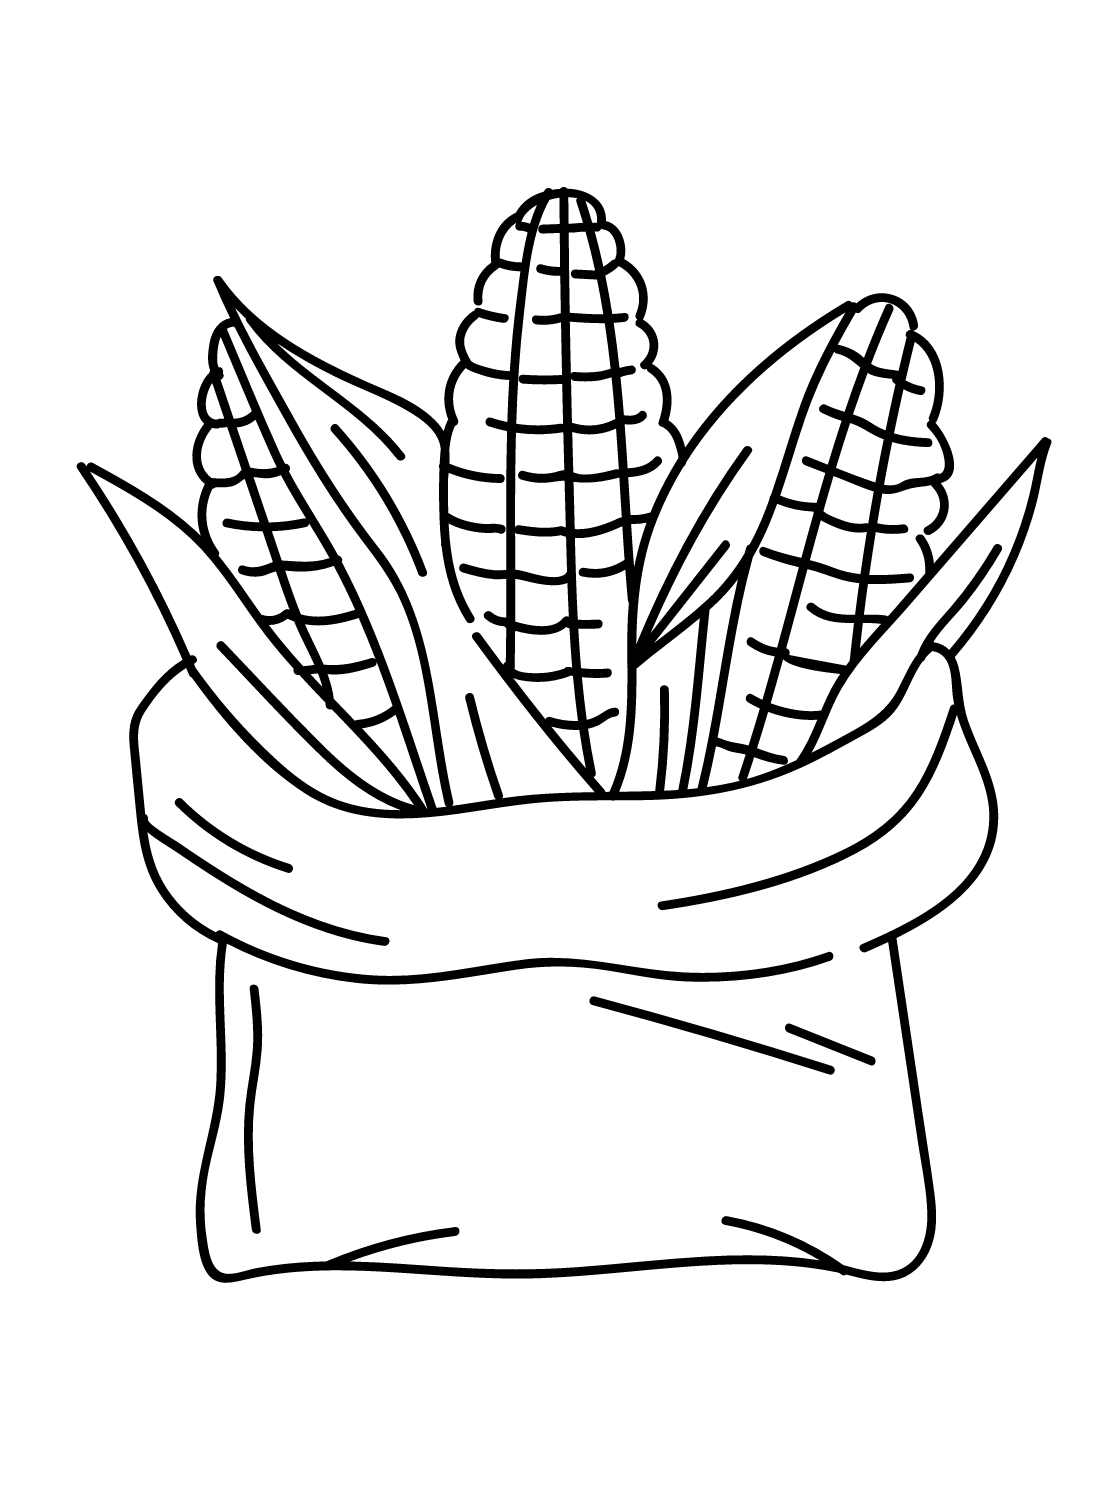 Saco de maíz de maíz